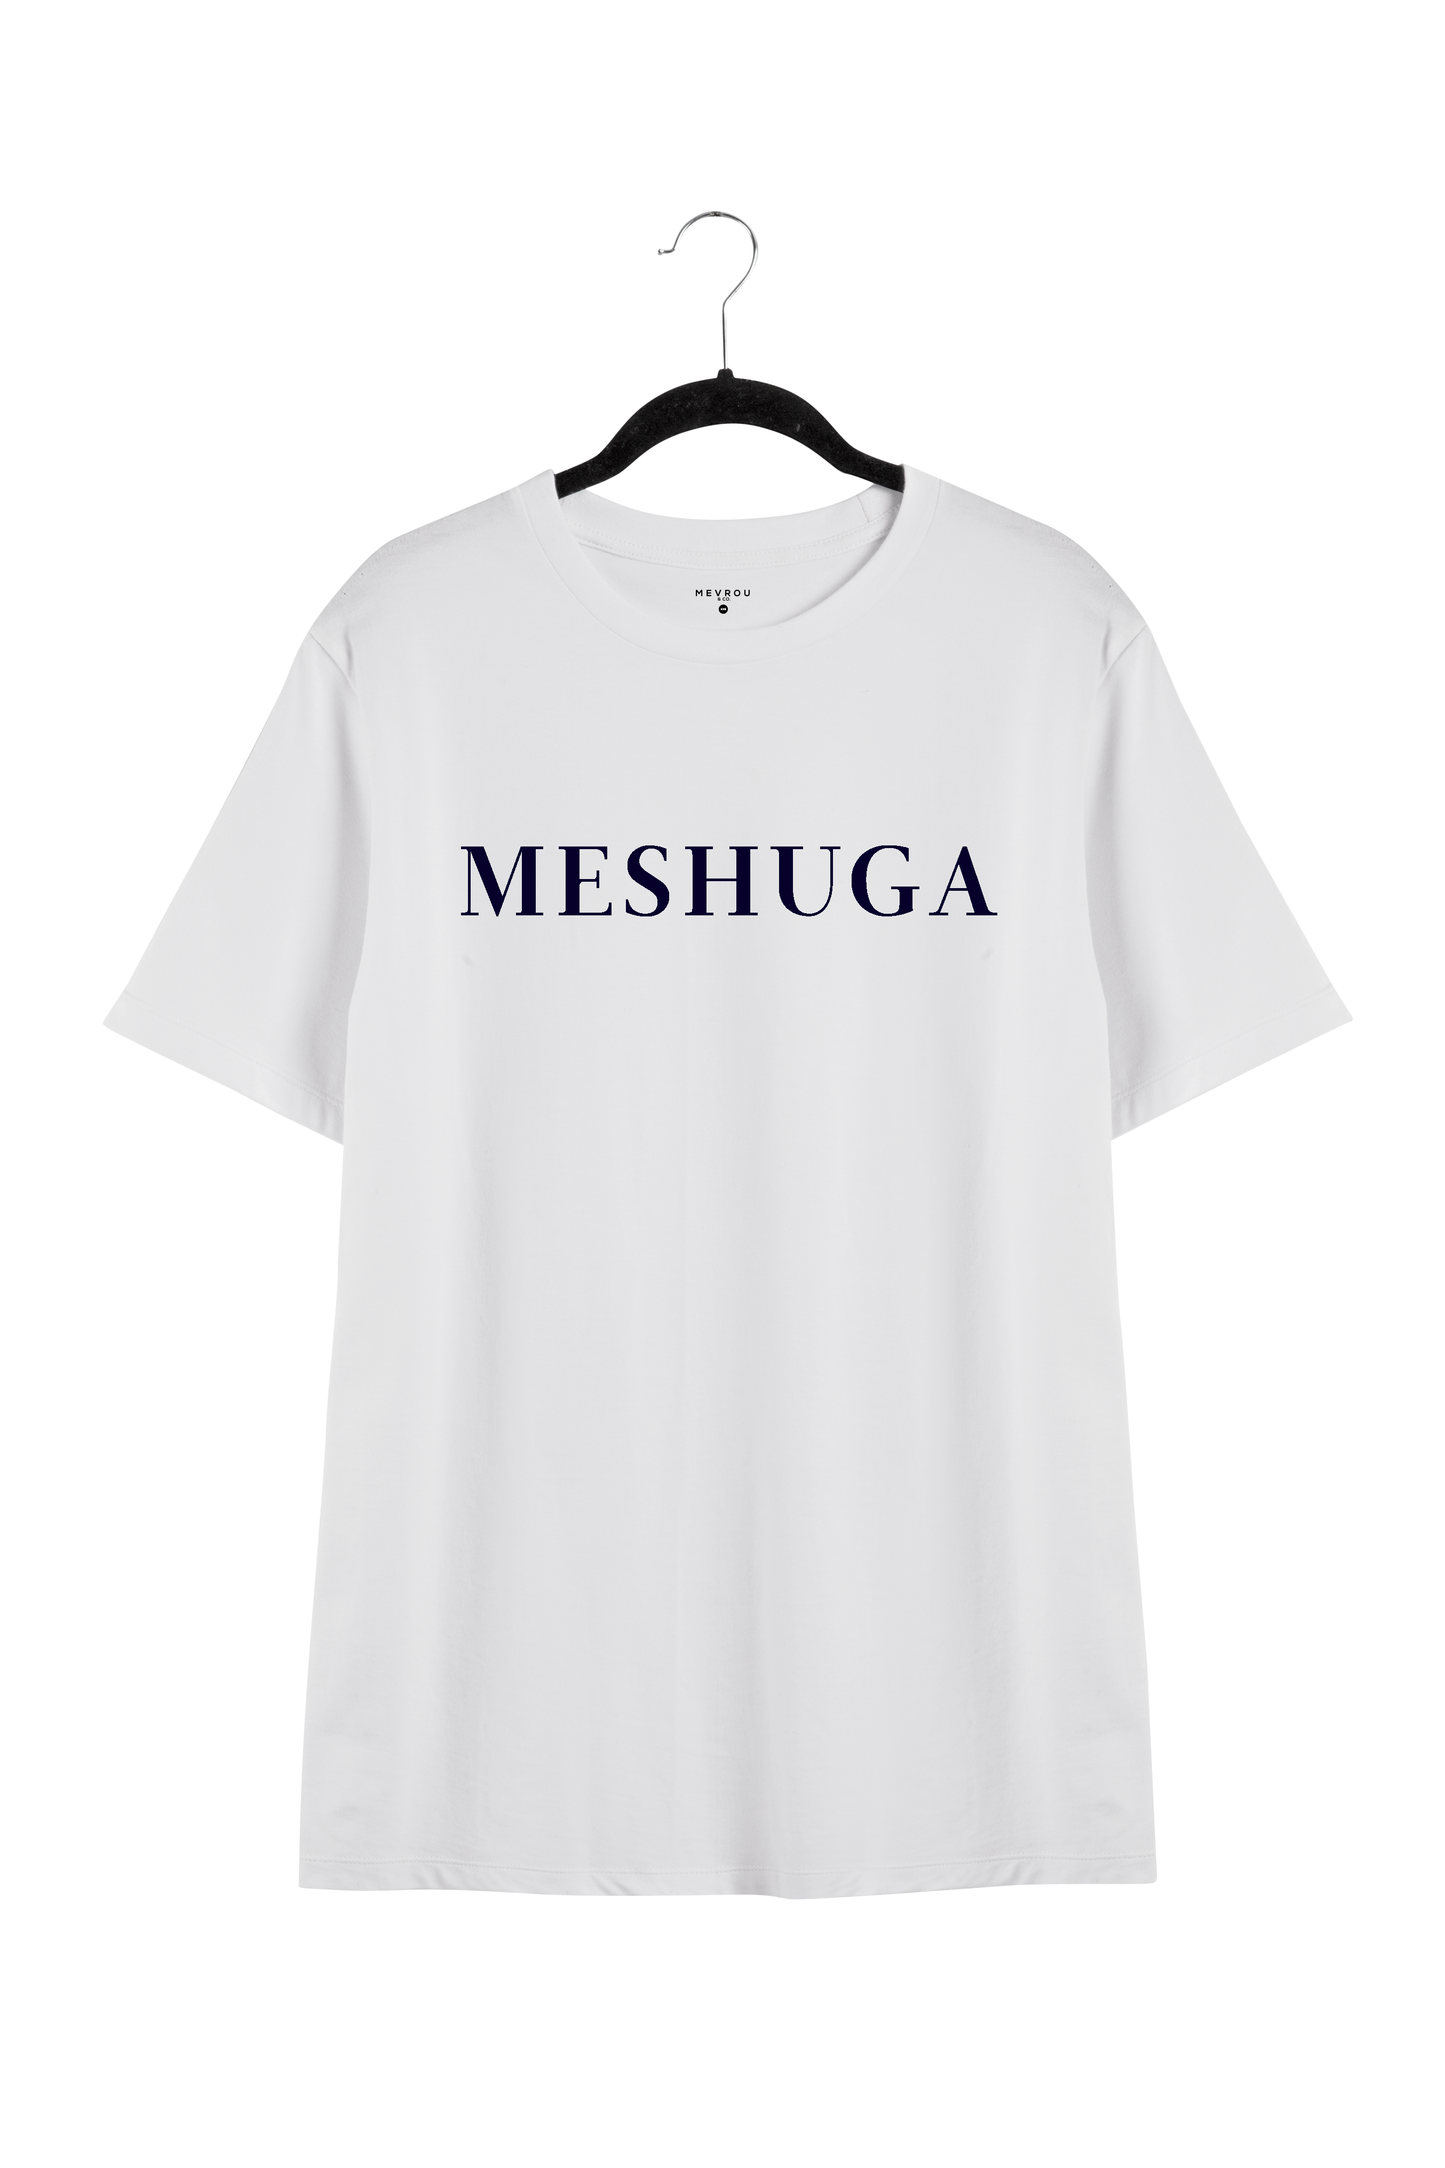 MESHUGA TEE